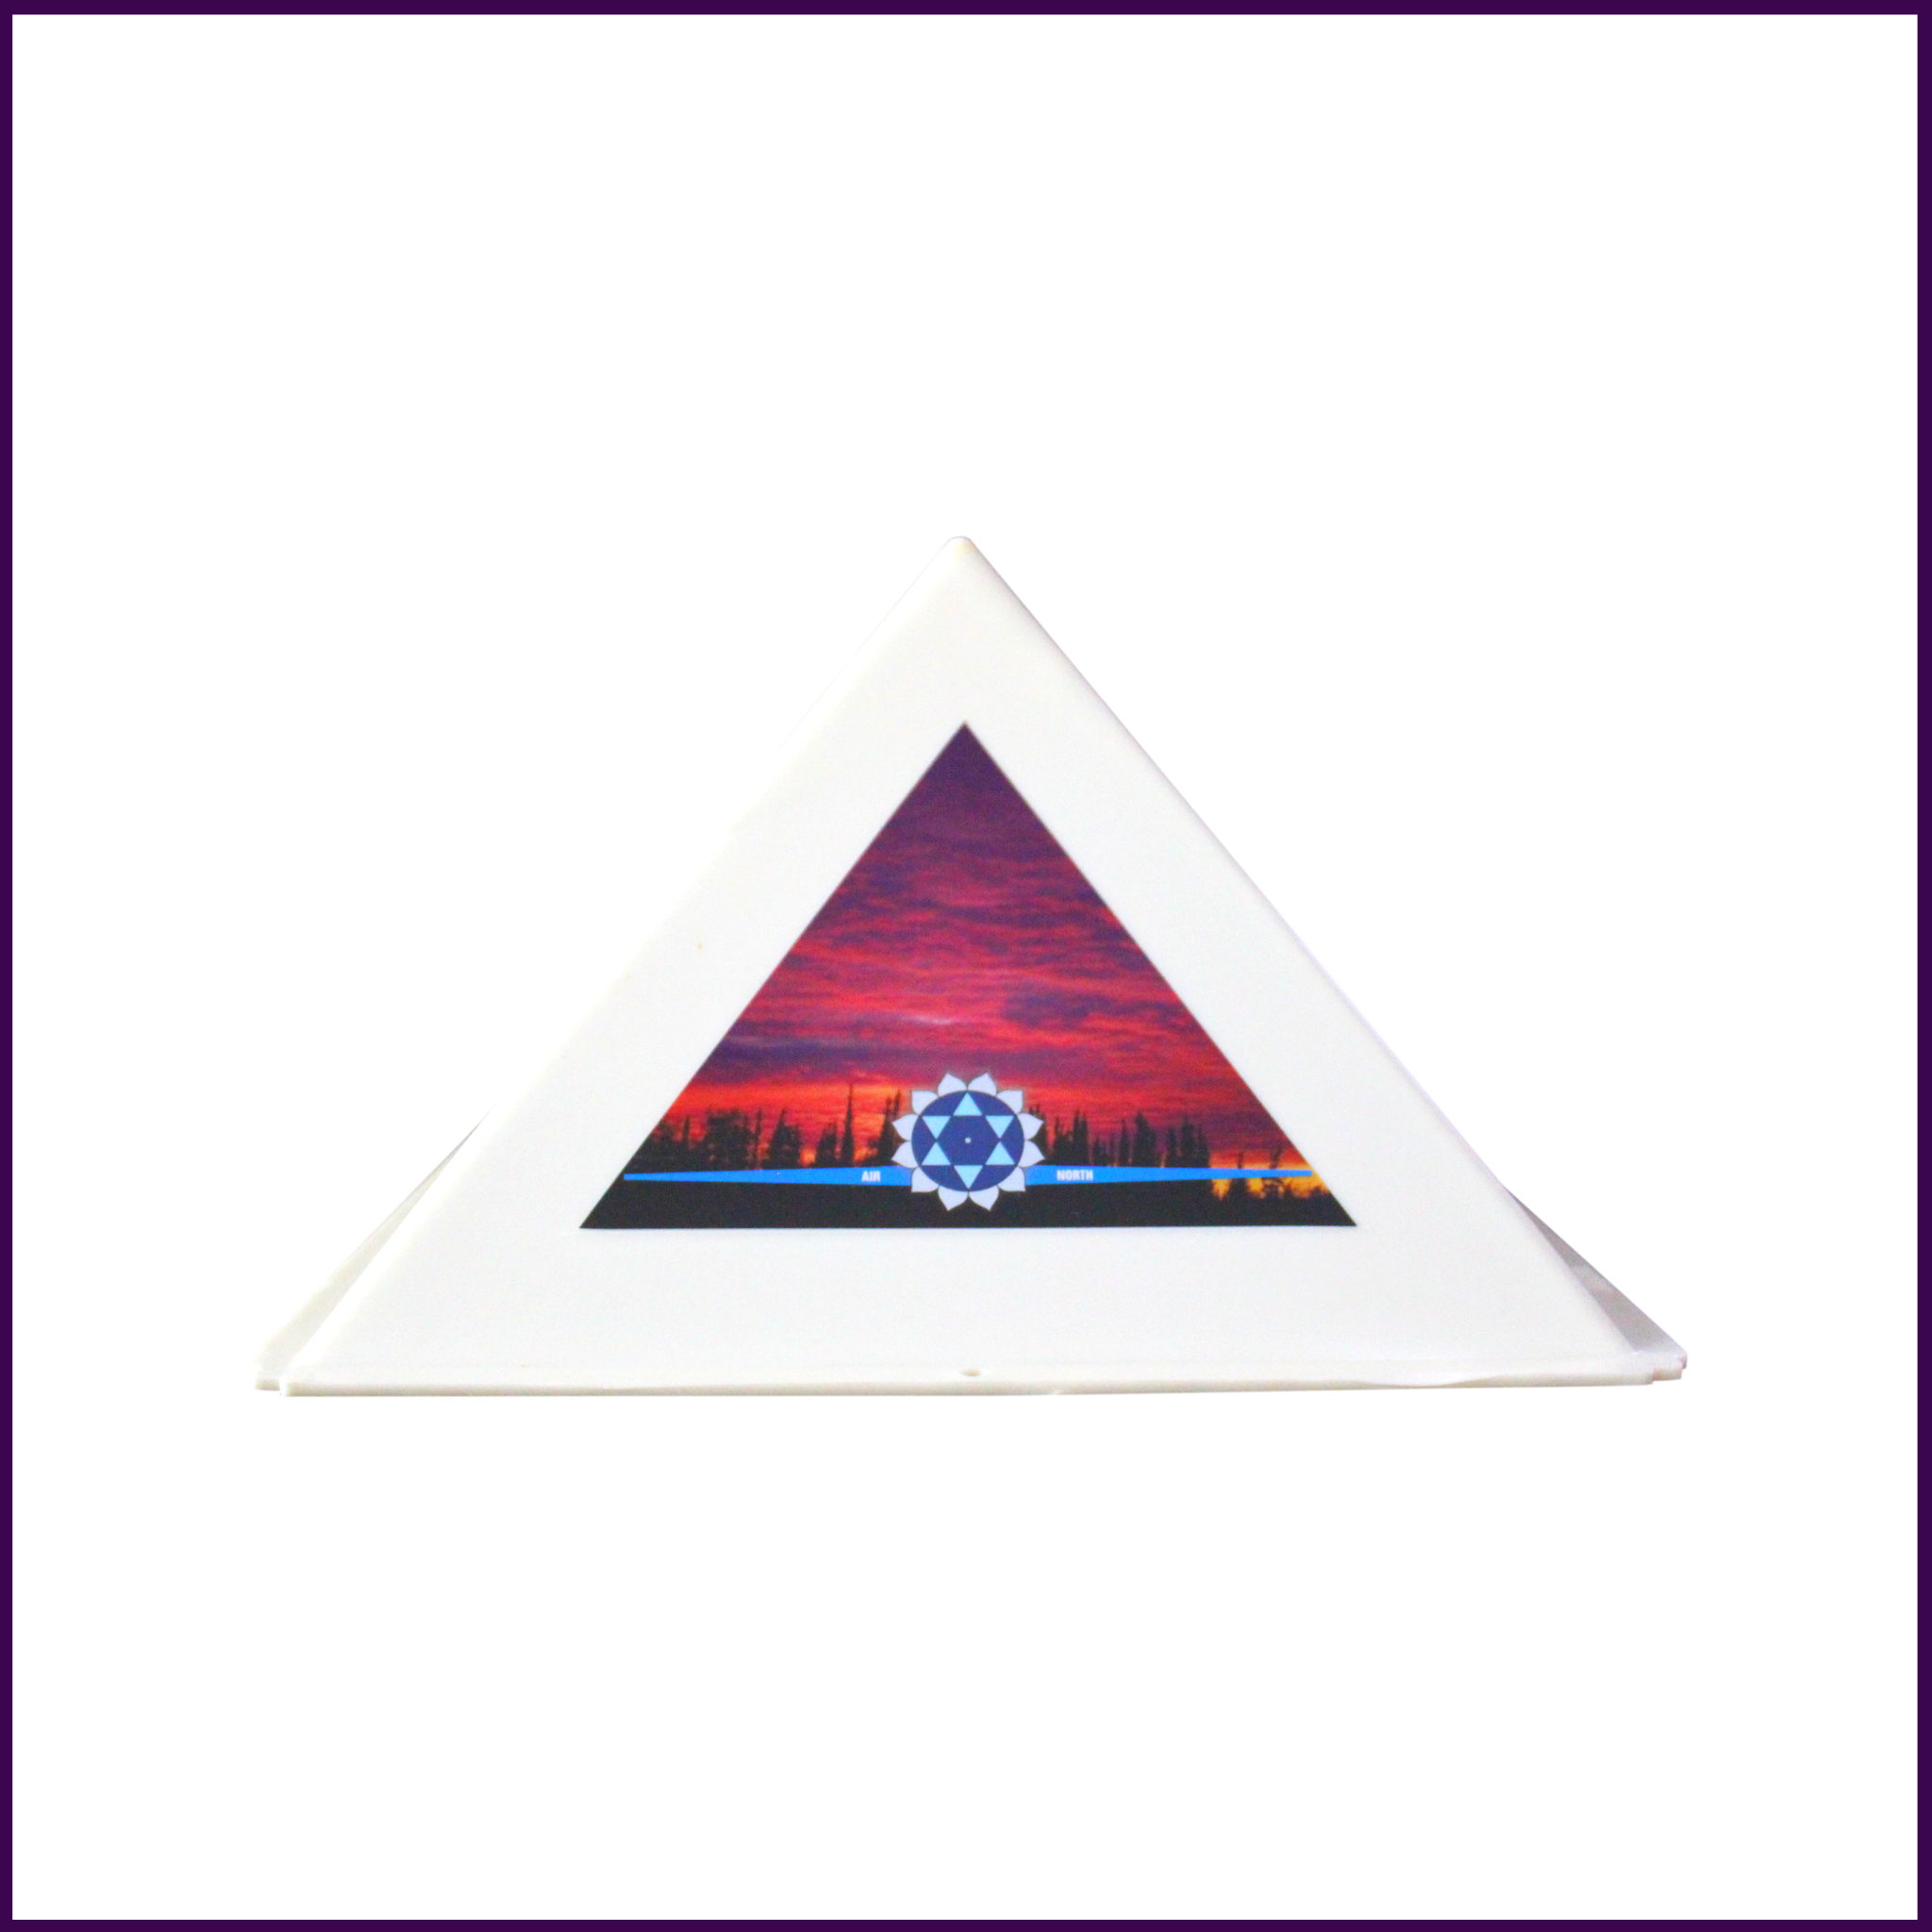 Pyramid Head Cap for Daily Meditation - 3 pieces - 51pyramids